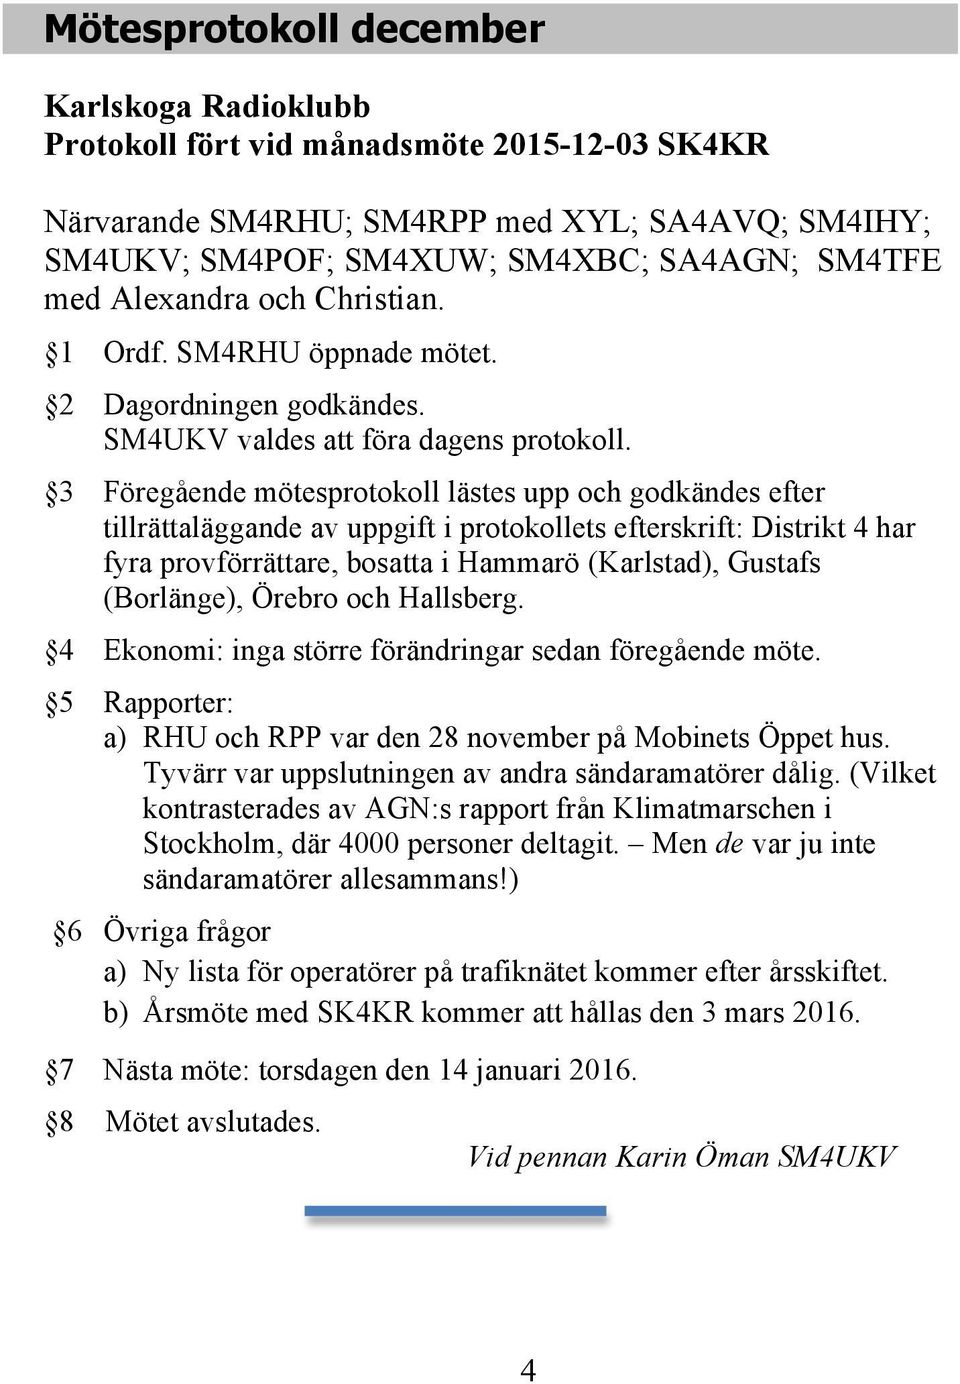 3 Föregående mötesprotokoll lästes upp och godkändes efter tillrättaläggande av uppgift i protokollets efterskrift: Distrikt 4 har fyra provförrättare, bosatta i Hammarö (Karlstad), Gustafs